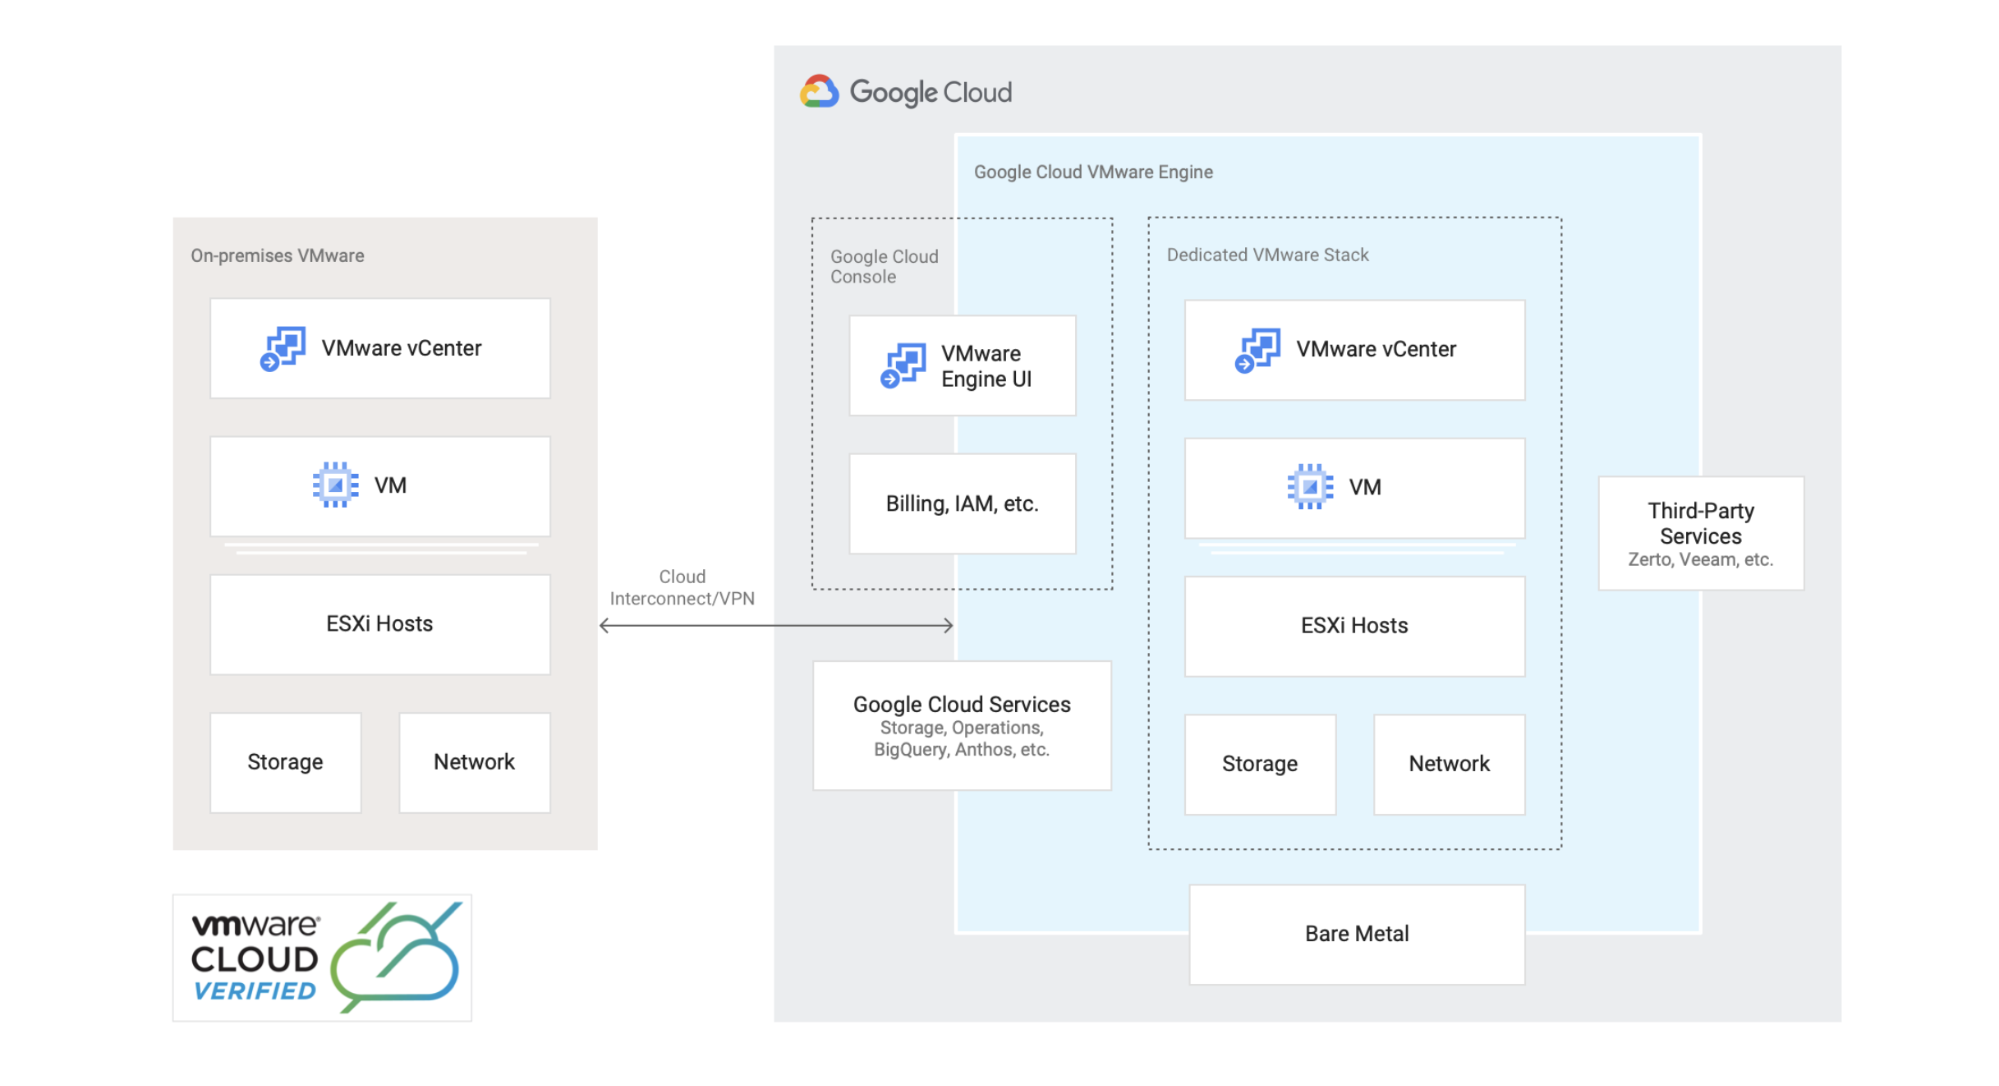 Referenzarchitektur, die zeigt, wie Sie Ihre VMware-Umgebung zu Google Cloud migrieren oder erweitern.